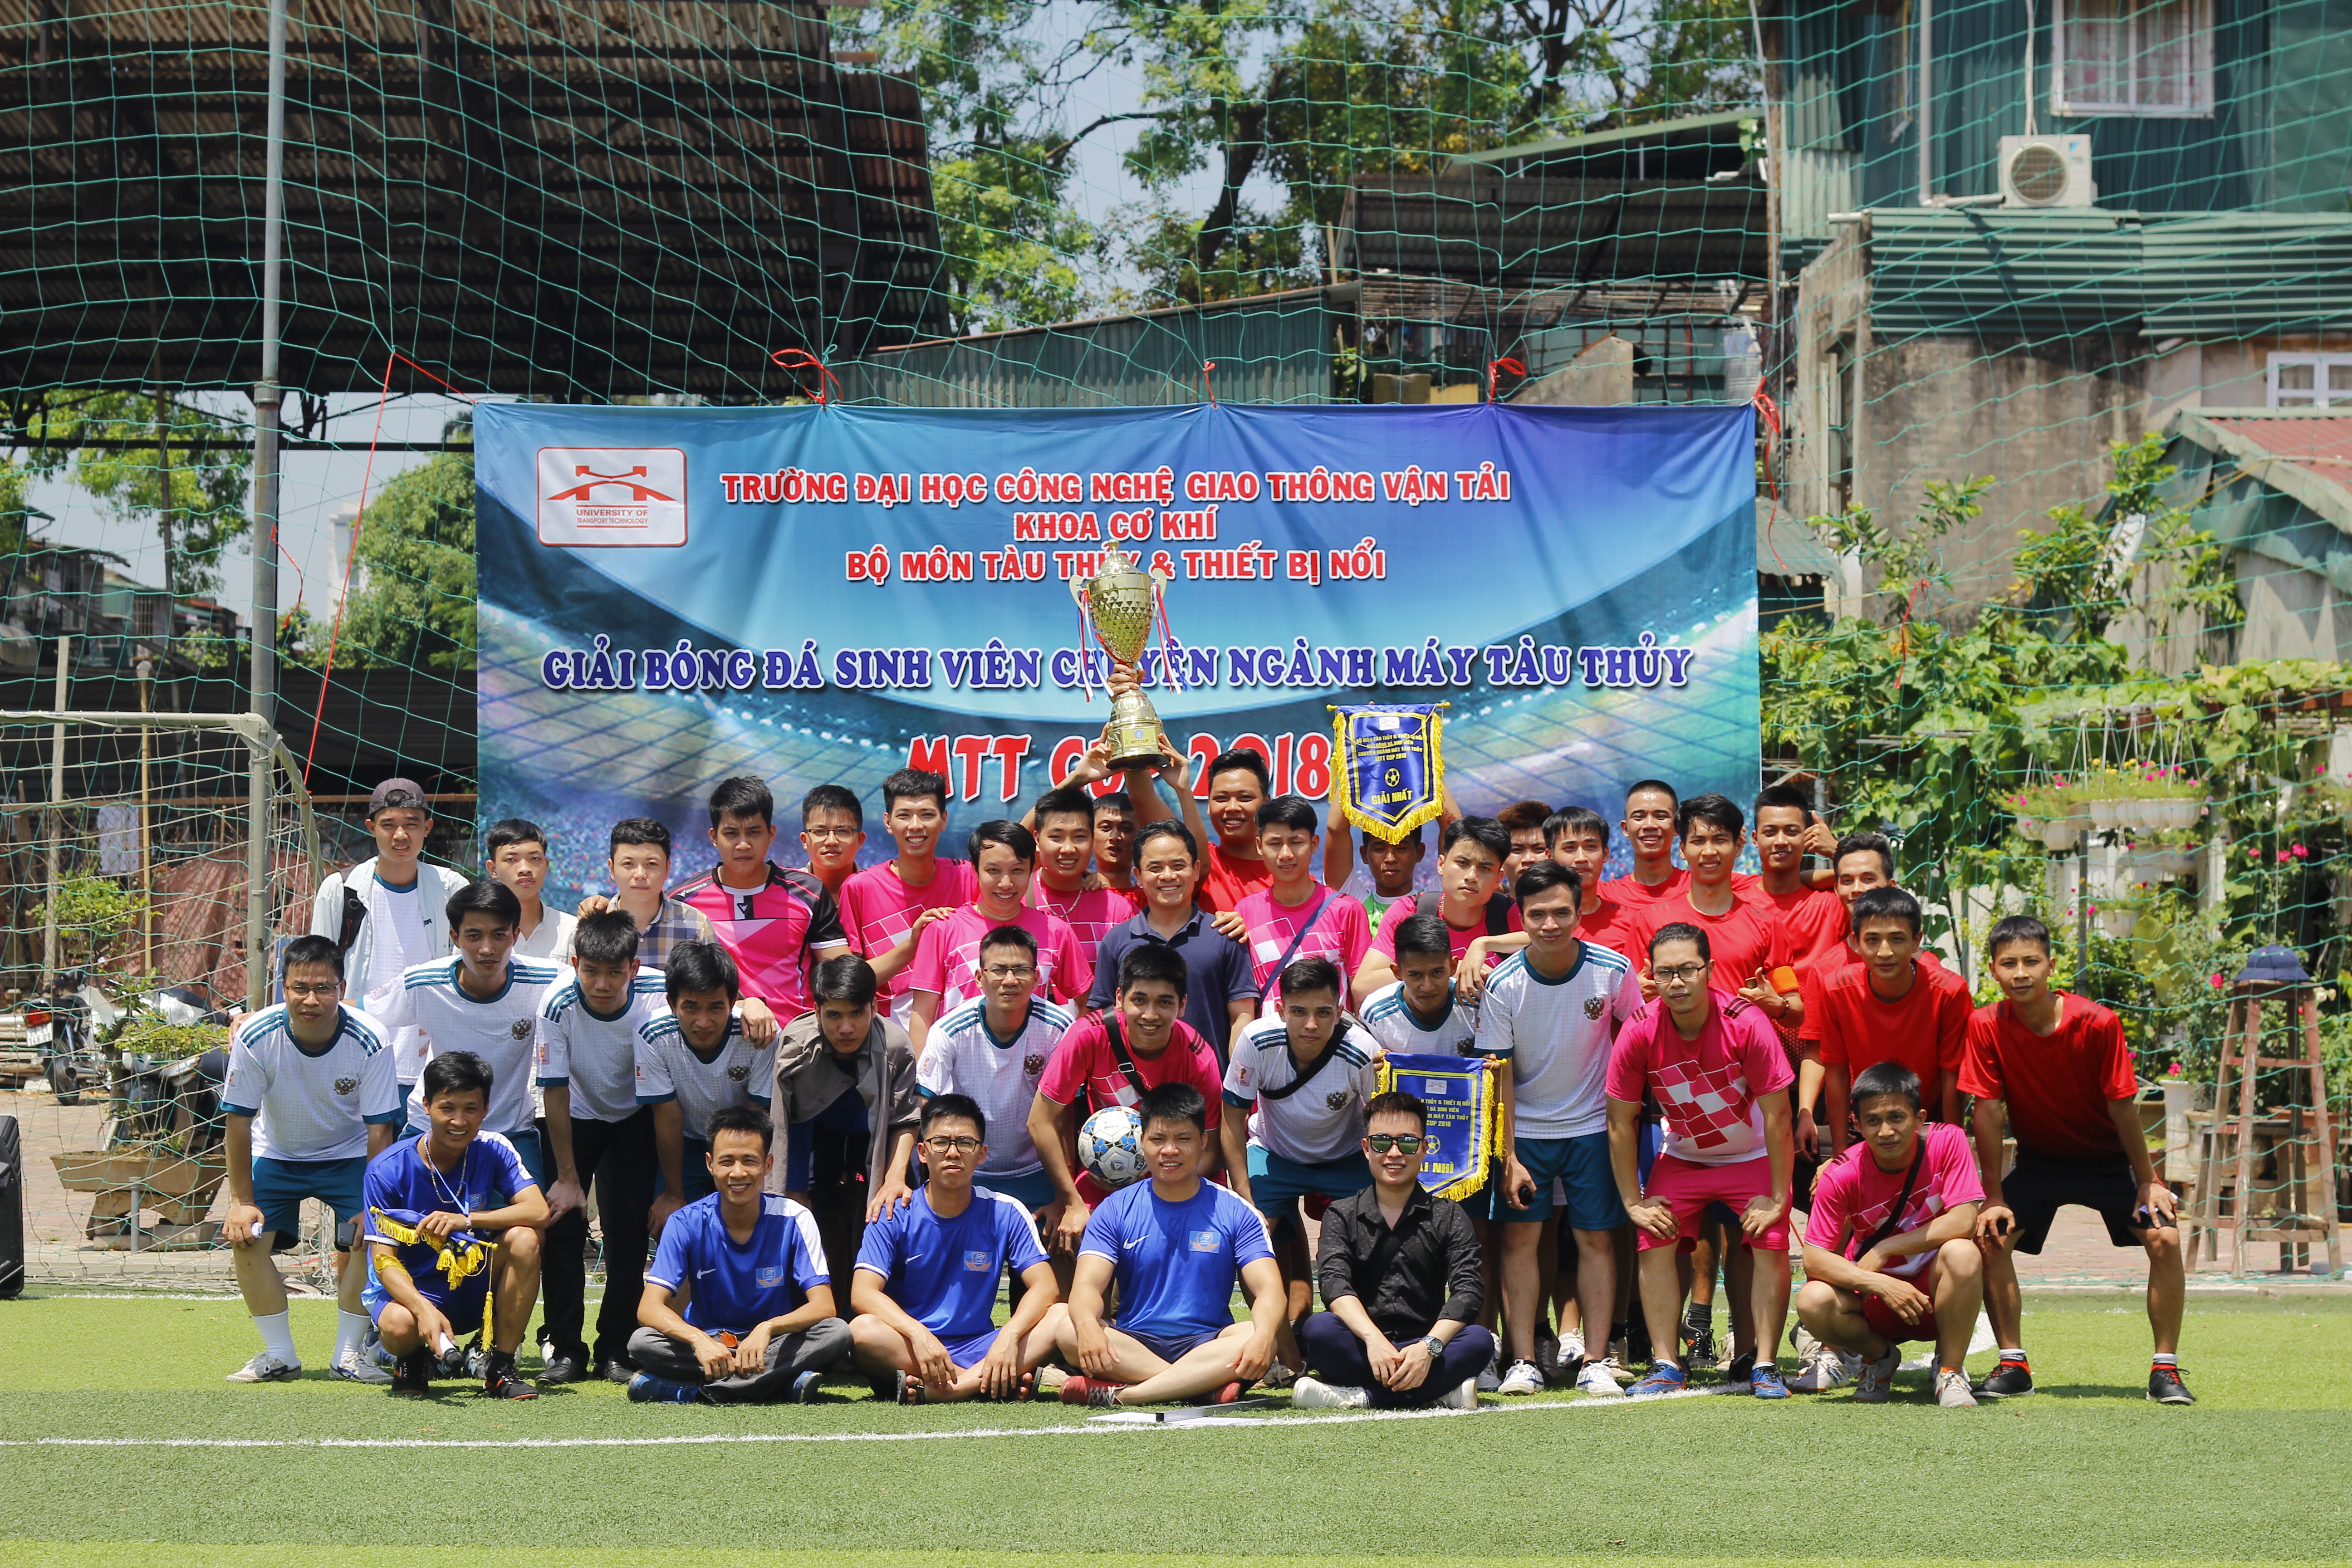 Giải bóng đá sinh viên Chuyên ngành Máy tàu thủy – MTT CUP 2018